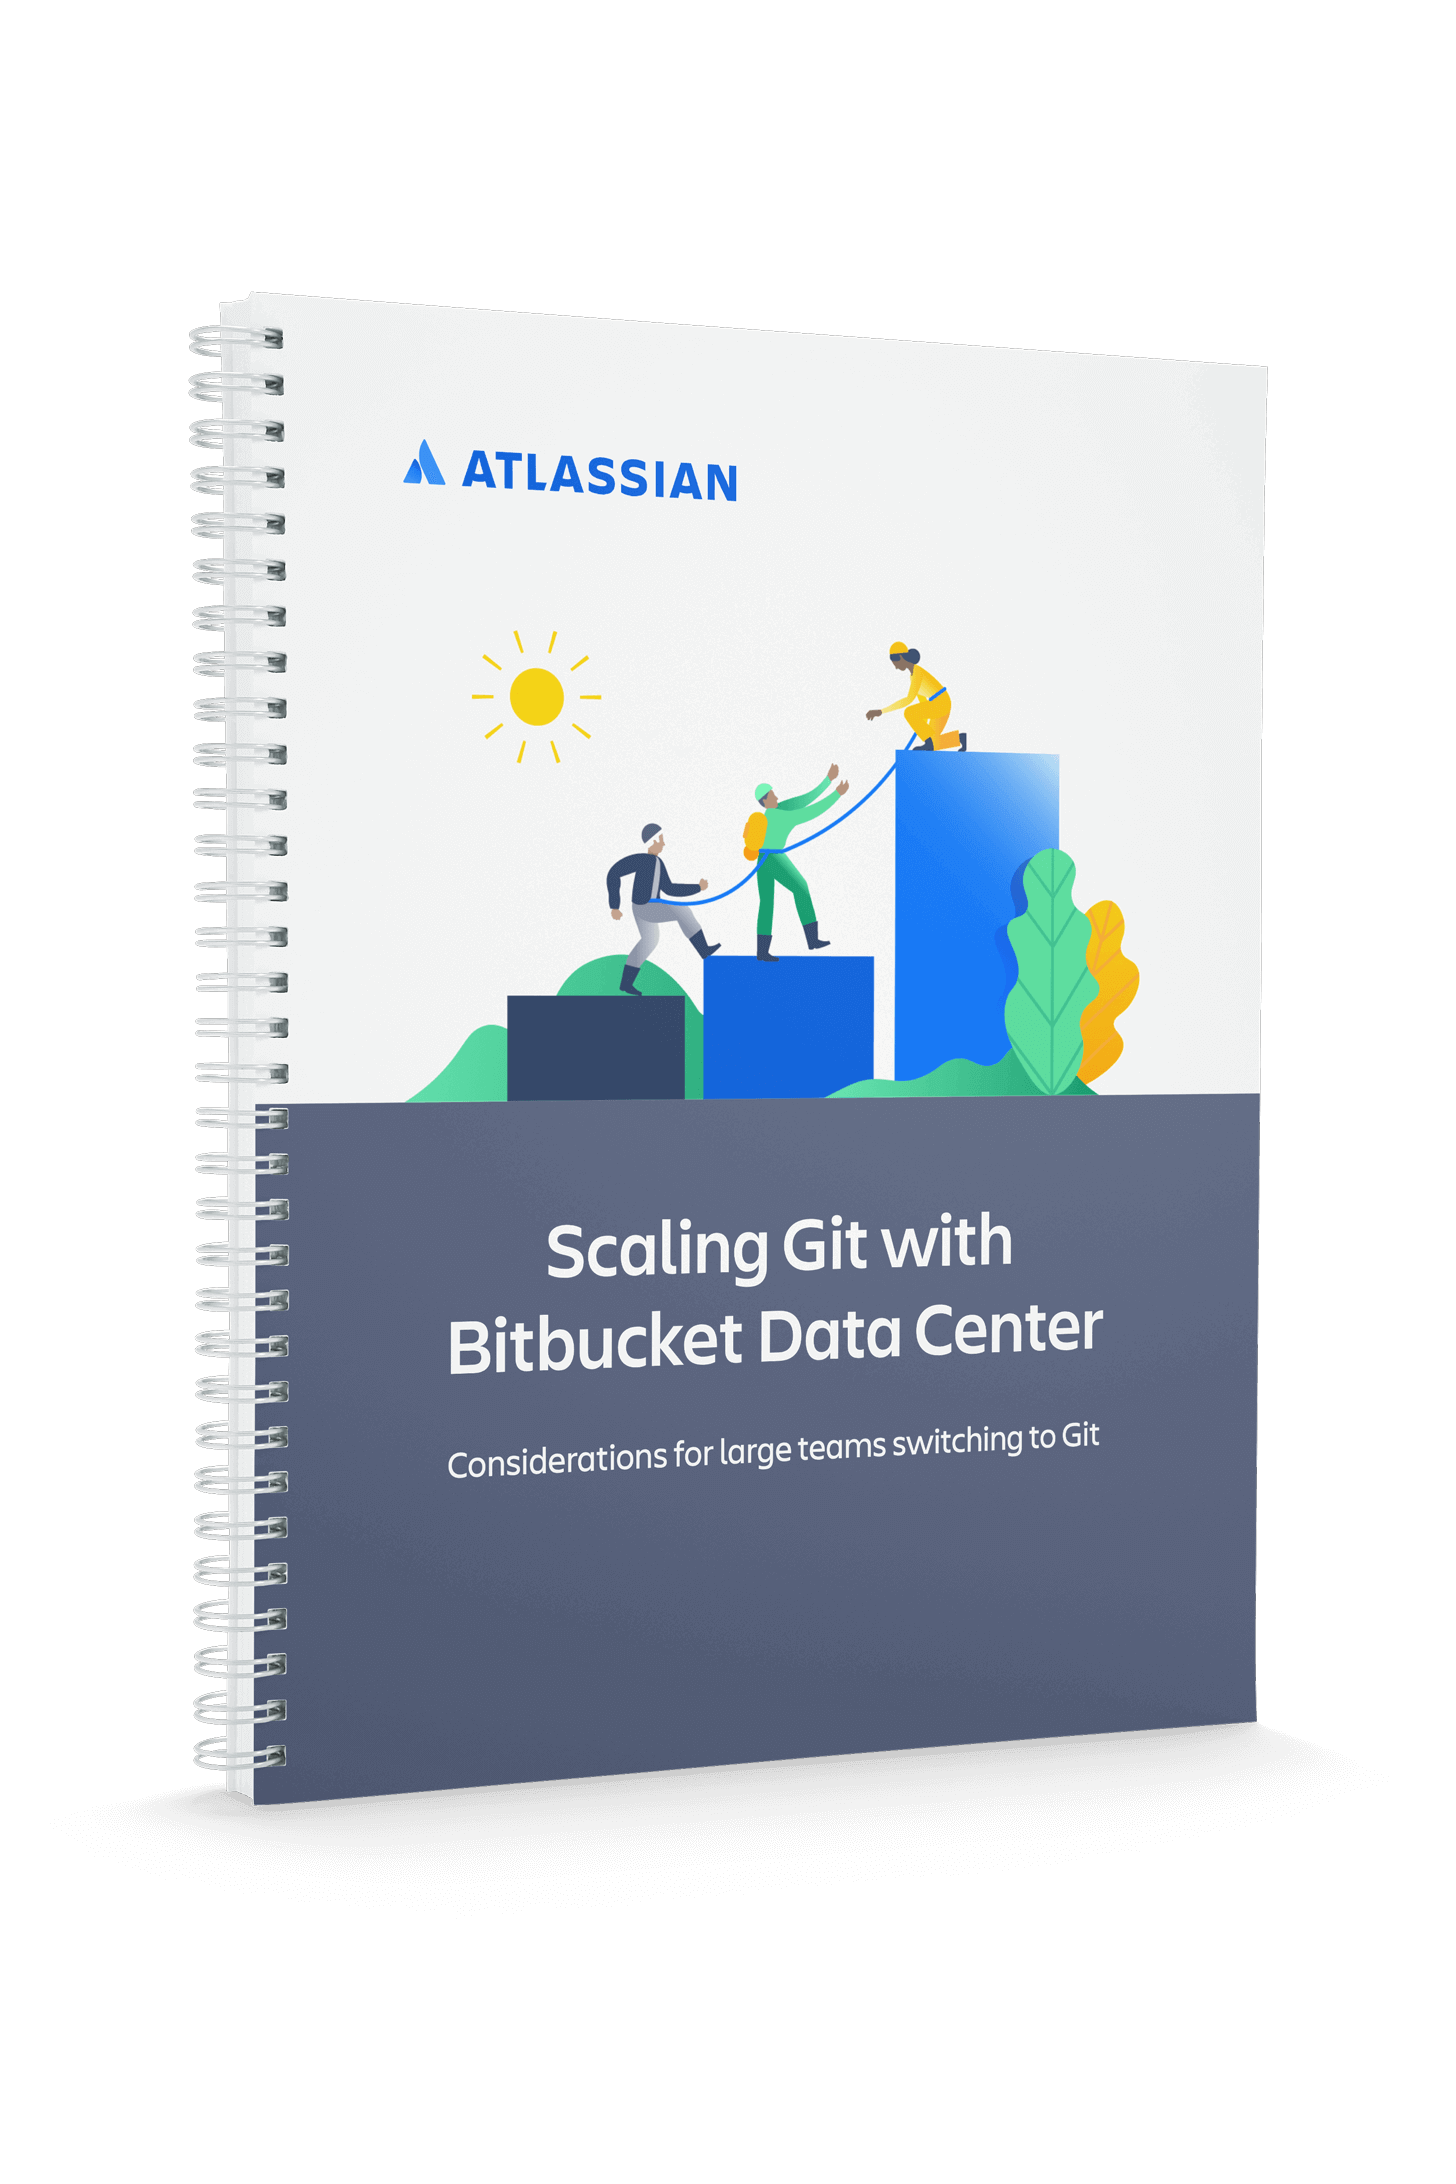 Обложка документа «Масштабирование Git с помощью Bitbucket Data Center»